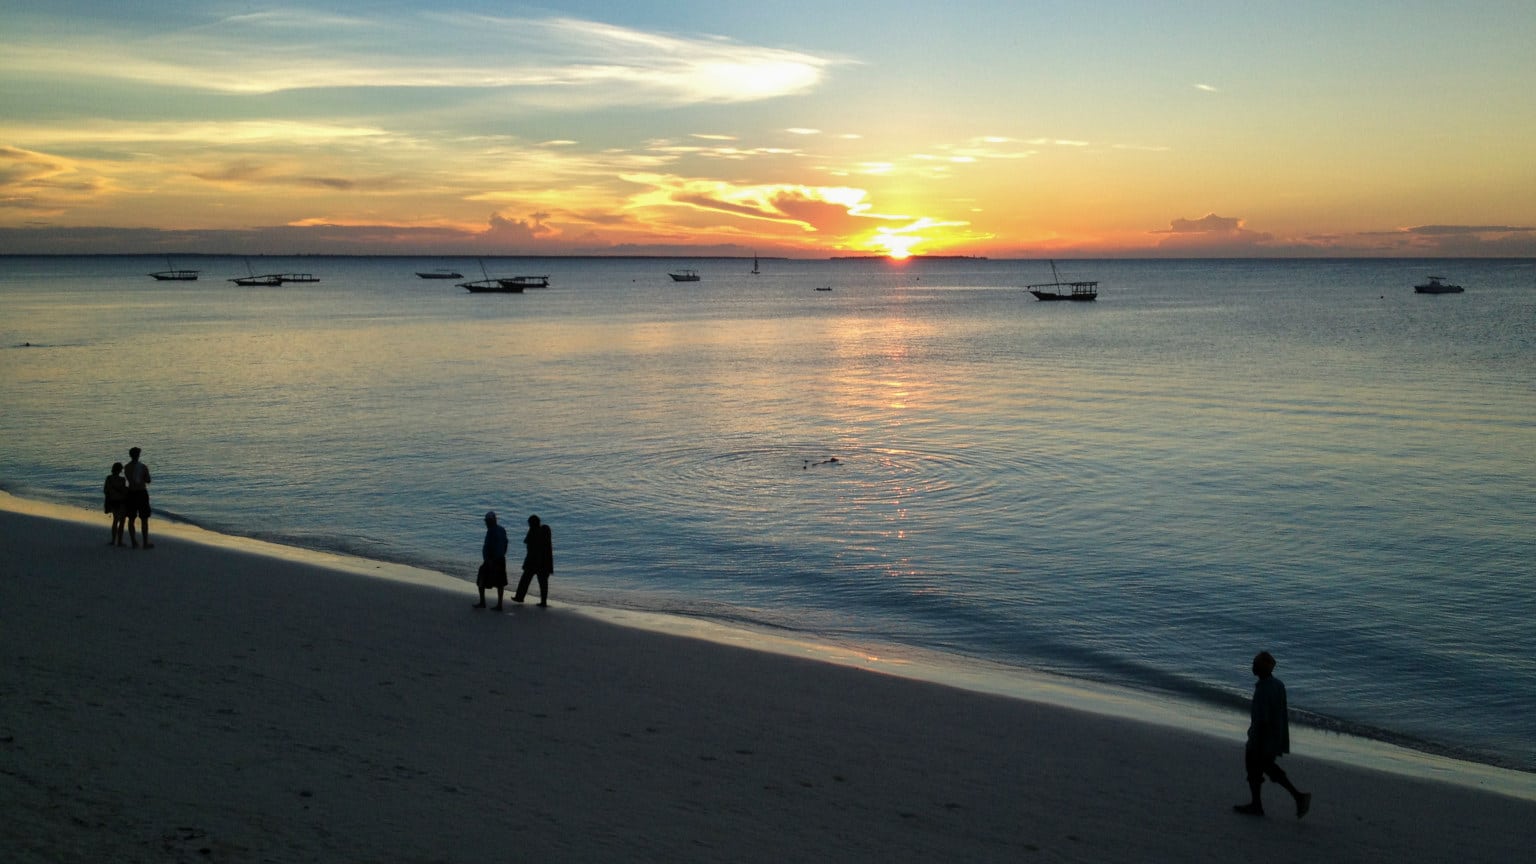 Tanzania-Zanzibar-Beach-Sunset-Silhouette-Boats-Tjaart-Yssel-2012-71851-Lg-RGB